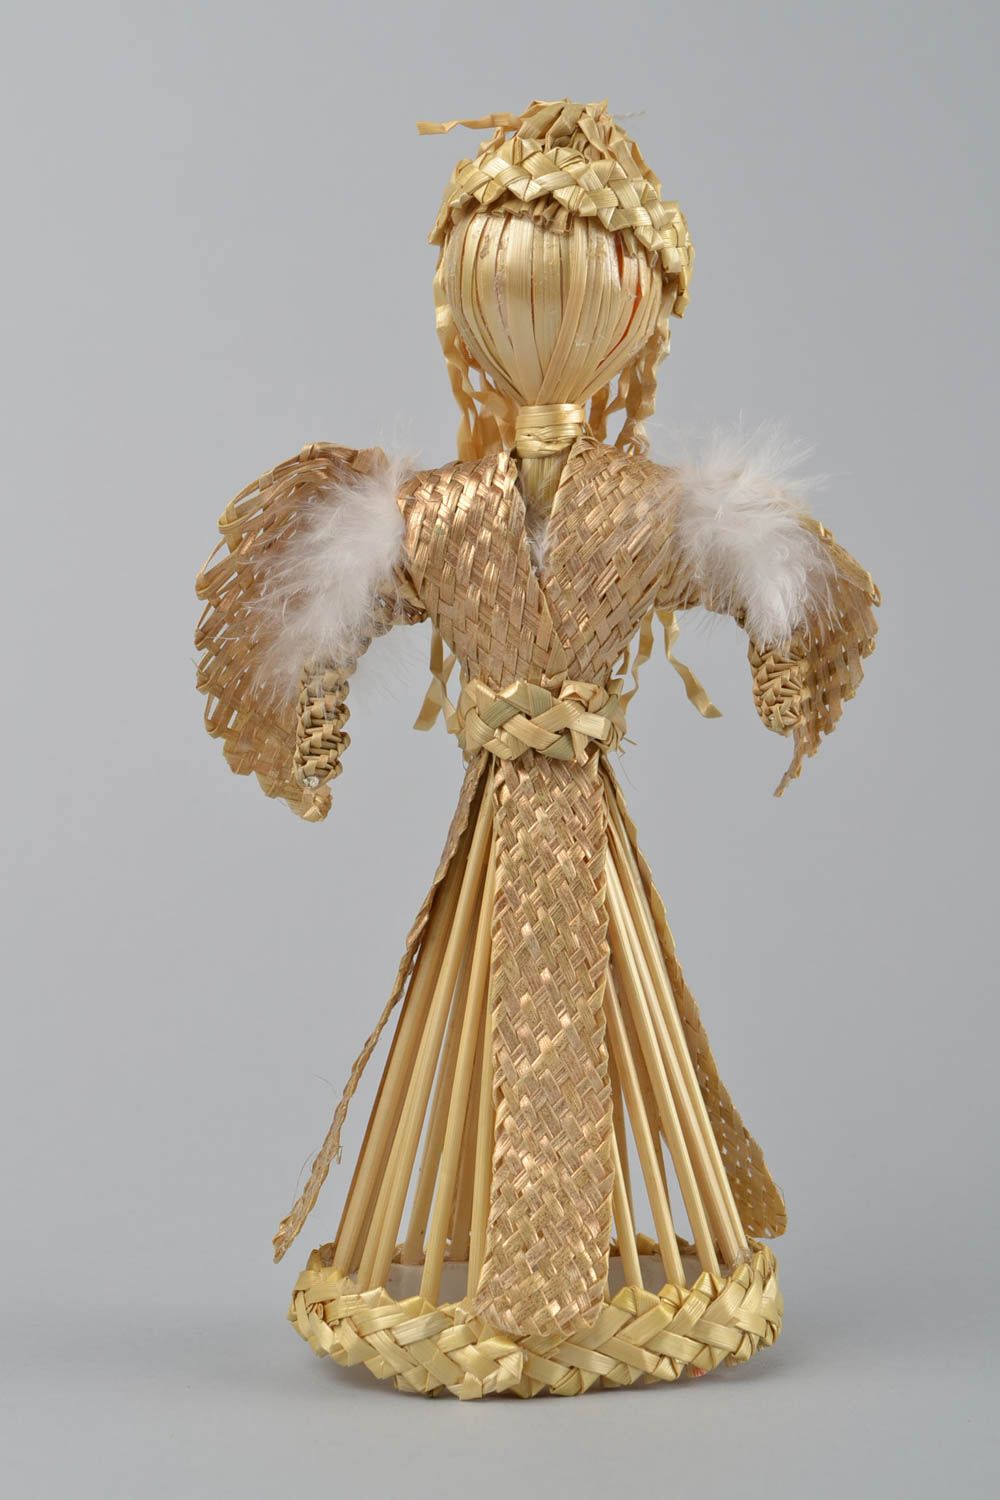 Figurine d'ange gardien faite main tressée de paille pour orner l'intérieur photo 3